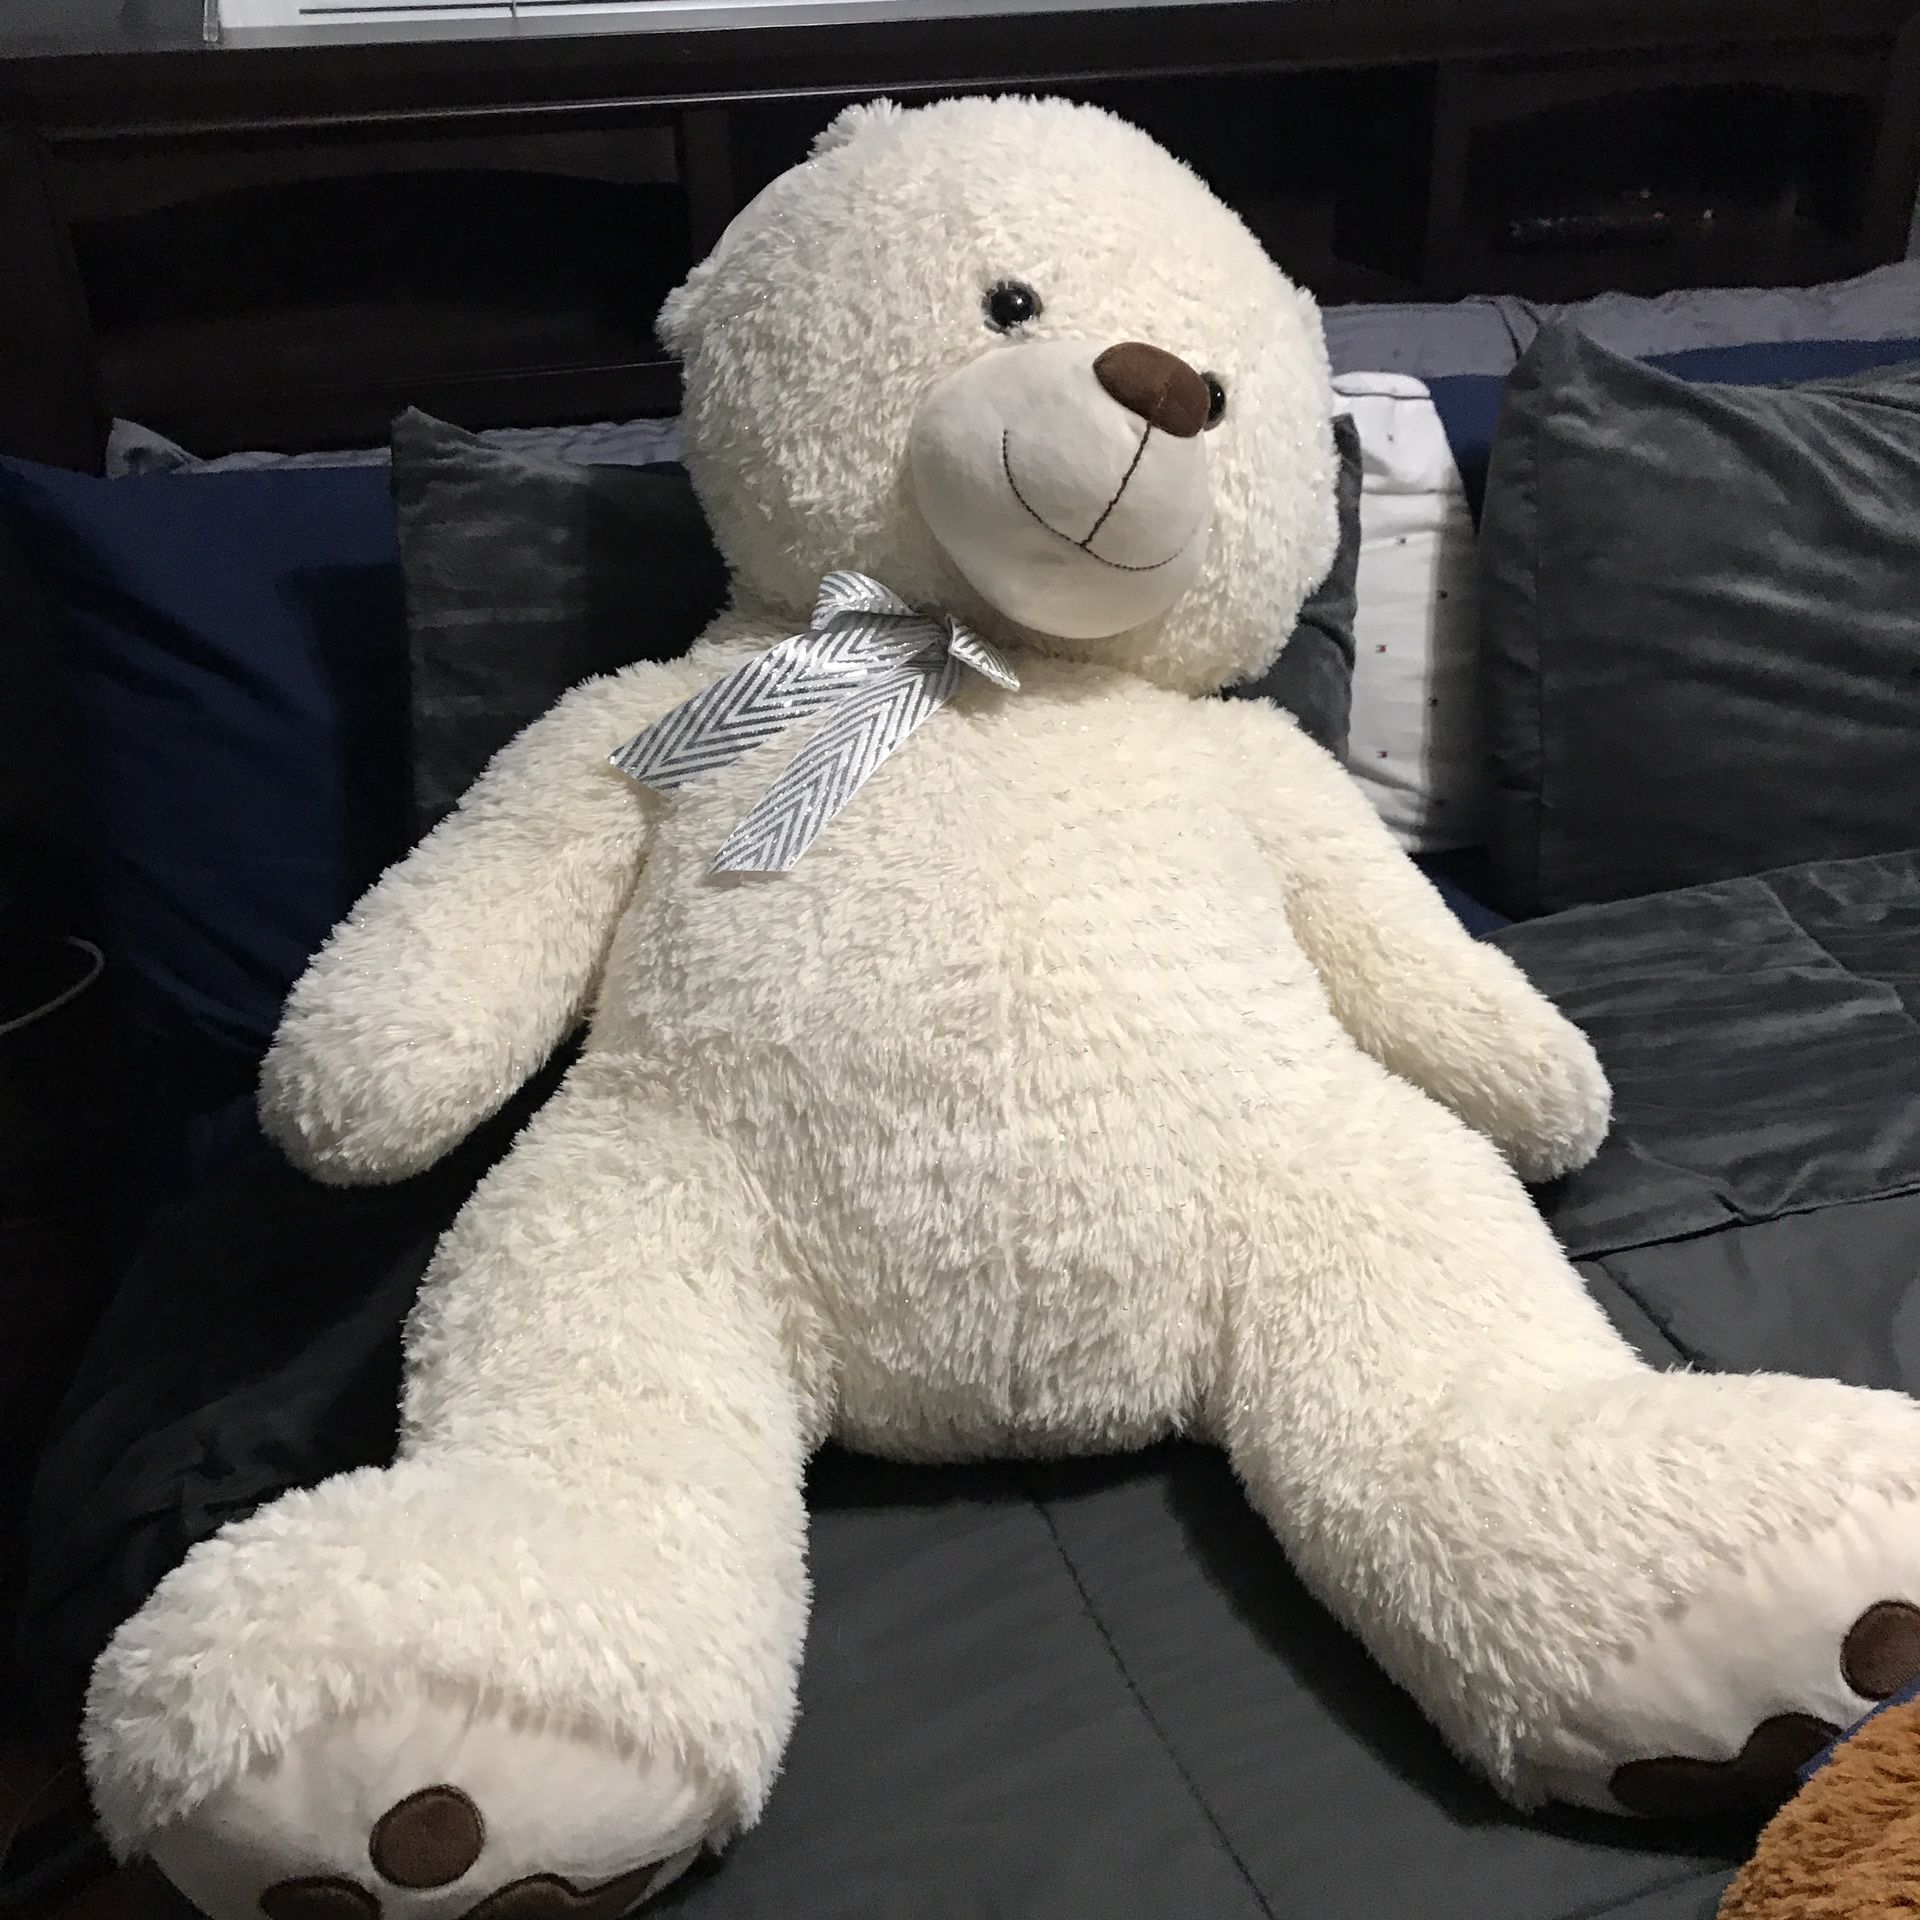 Large teddy bear